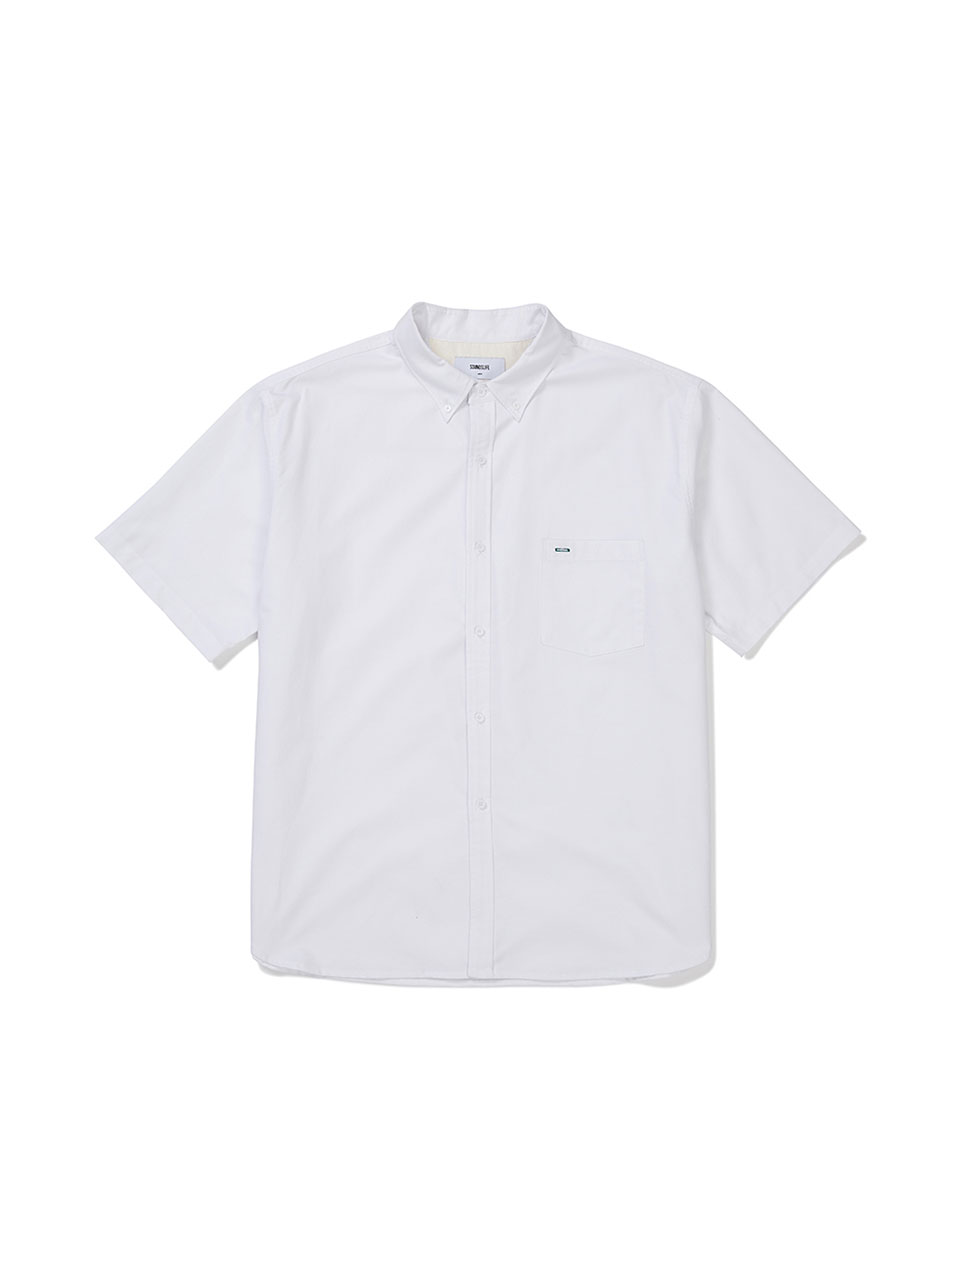 SOUNDSLIFE - Short Sleeve Shirt Big Boy Fit White